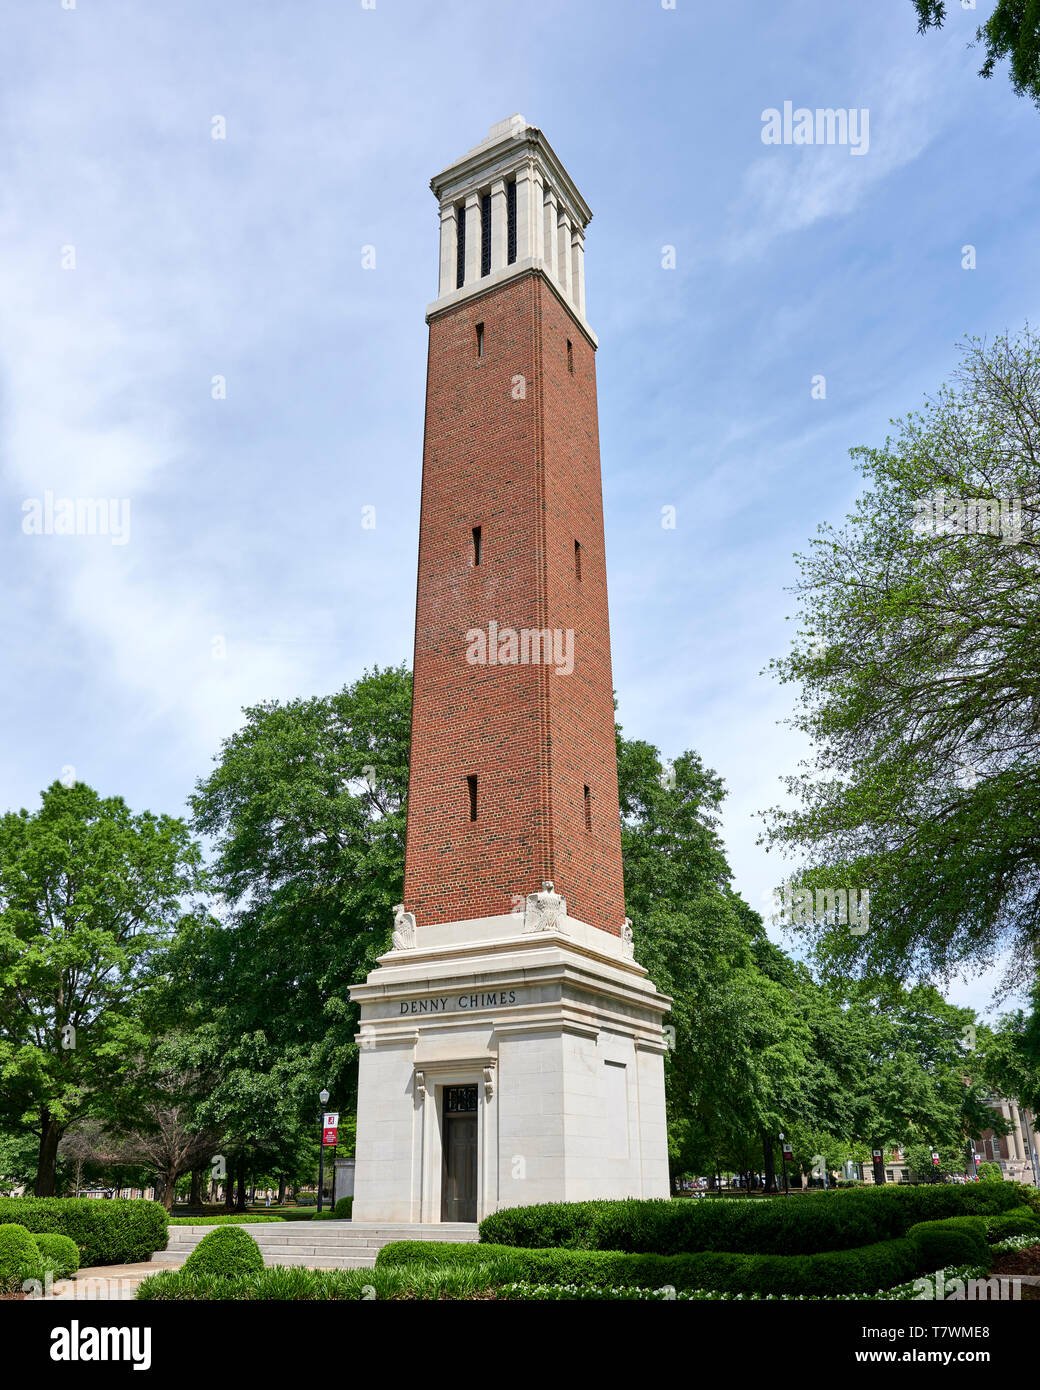 Denny de campanillas torre en el quad en la Universidad de Alabama en Tuscaloosa Alabama, Estados Unidos. Foto de stock